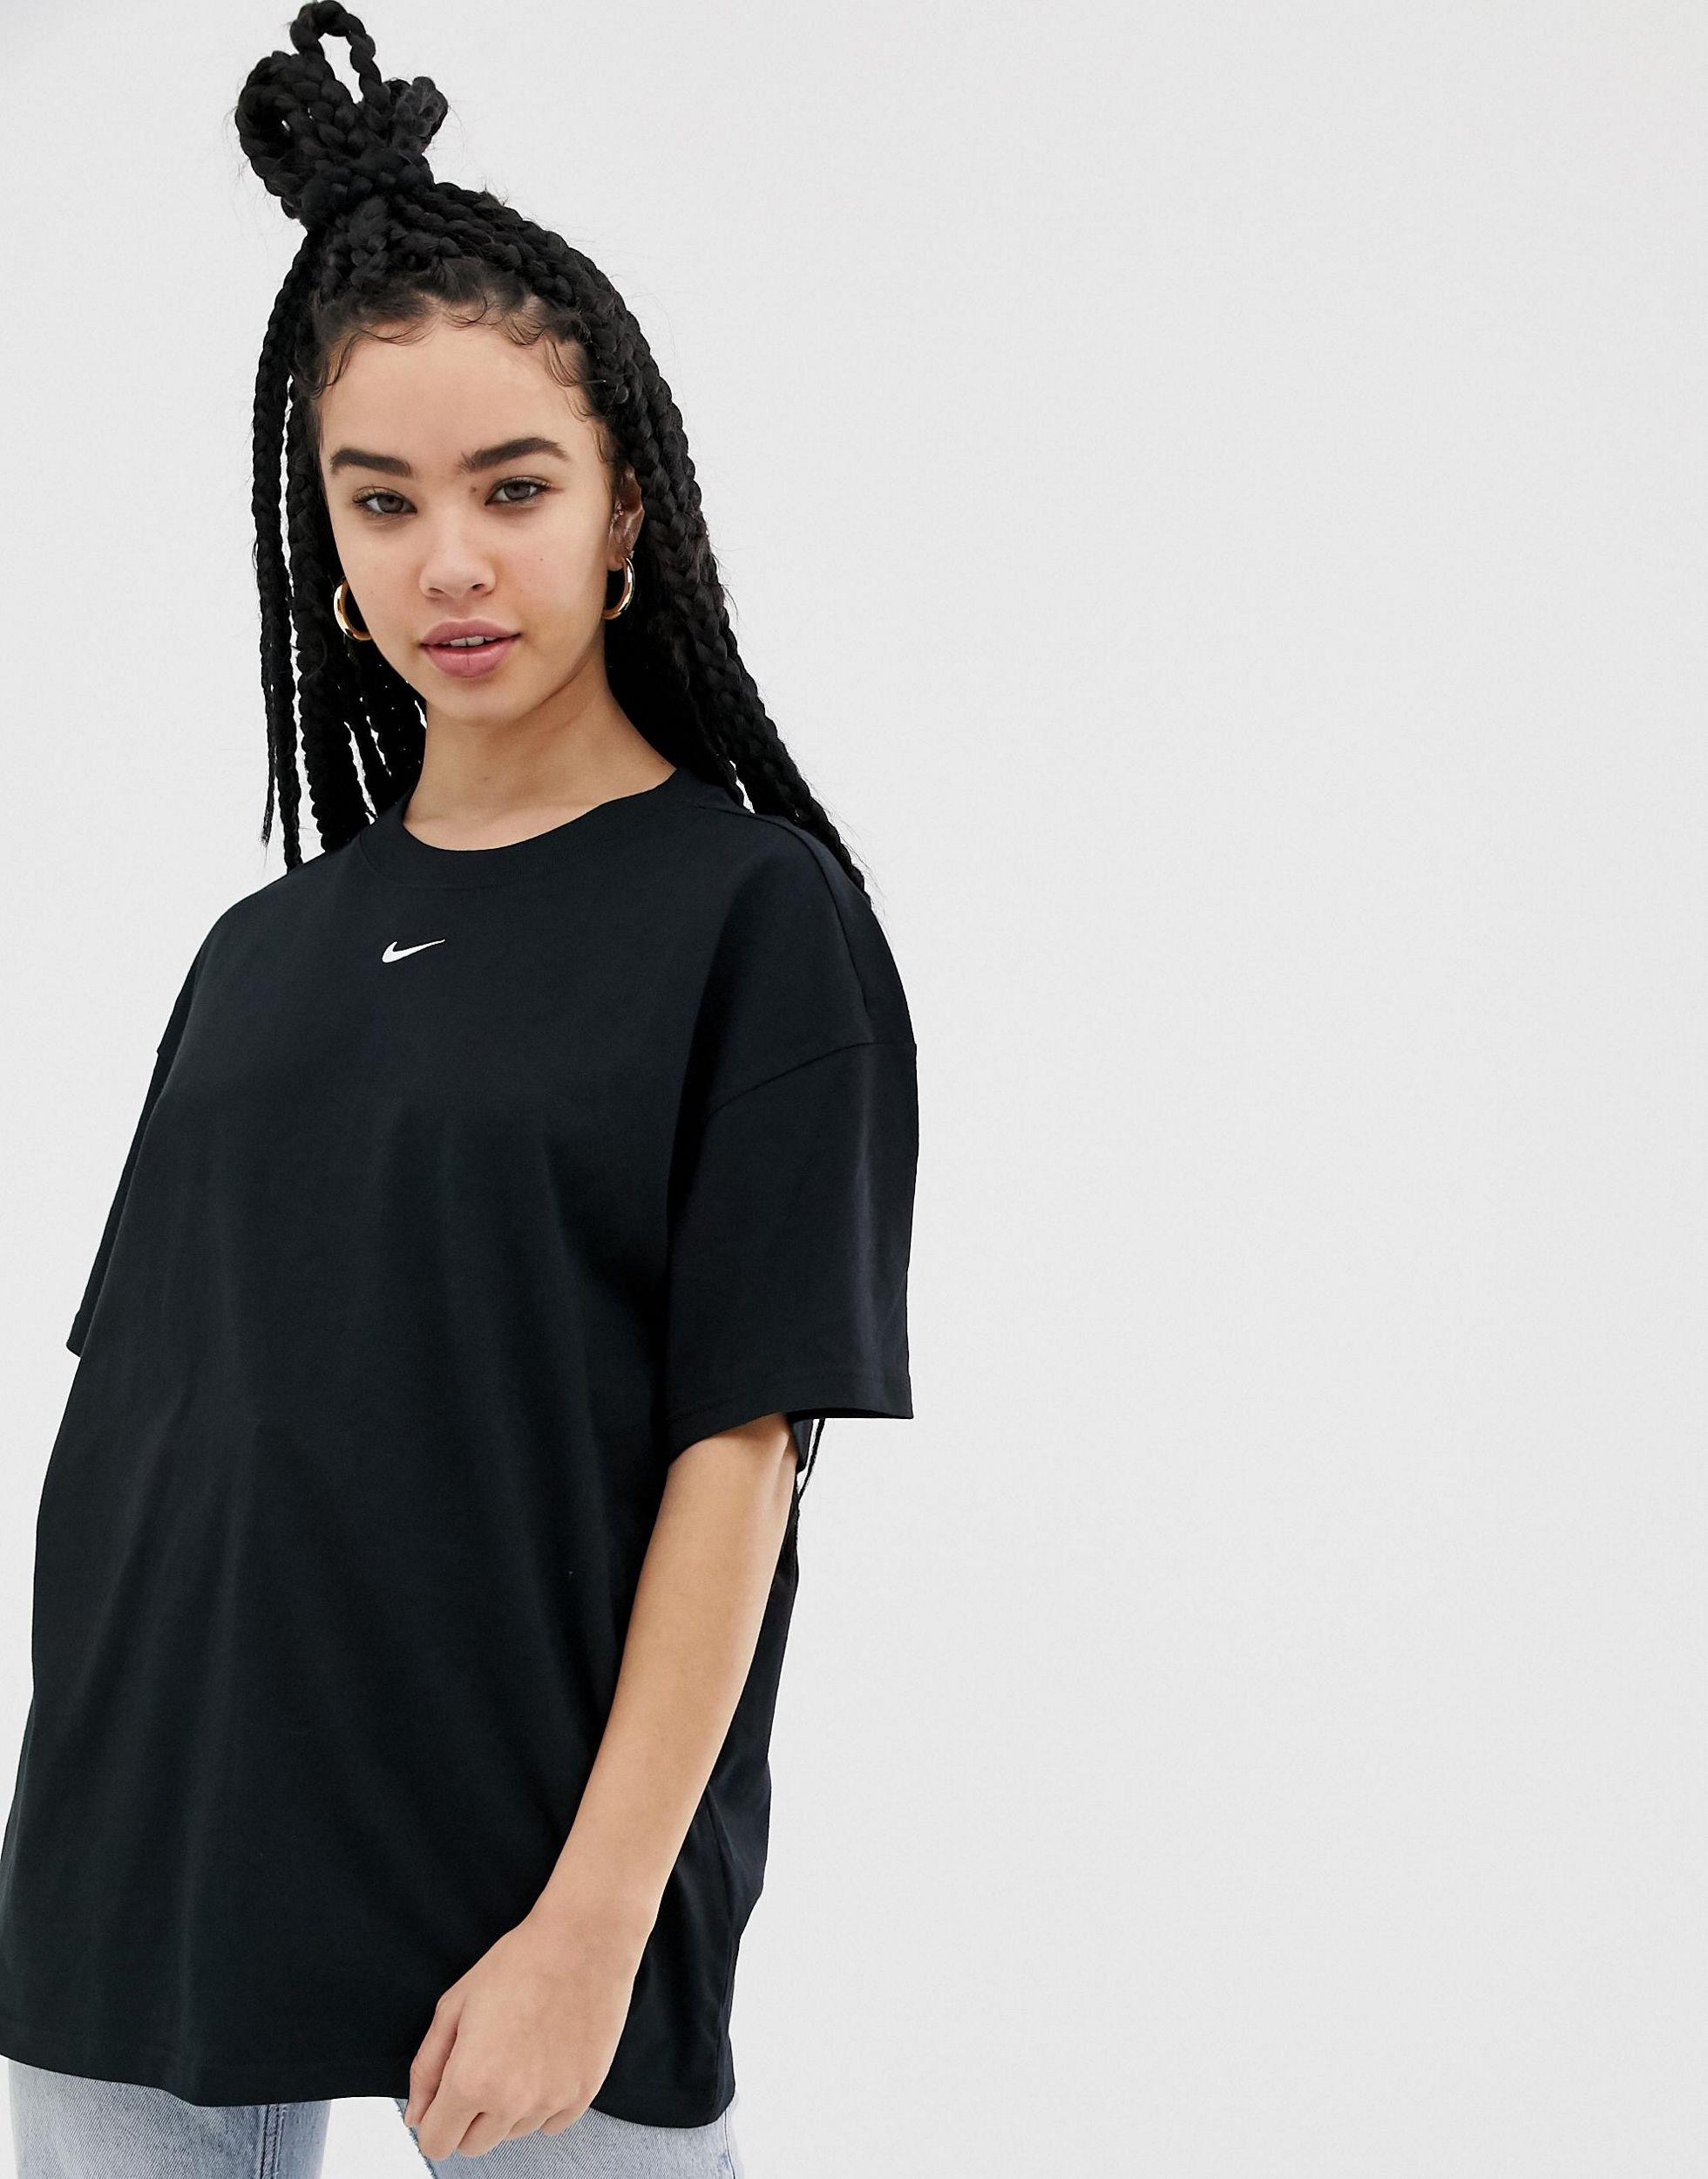 spids Picket Manchuriet Nike Oversized Boyfriend T-shirt in Black | Lyst